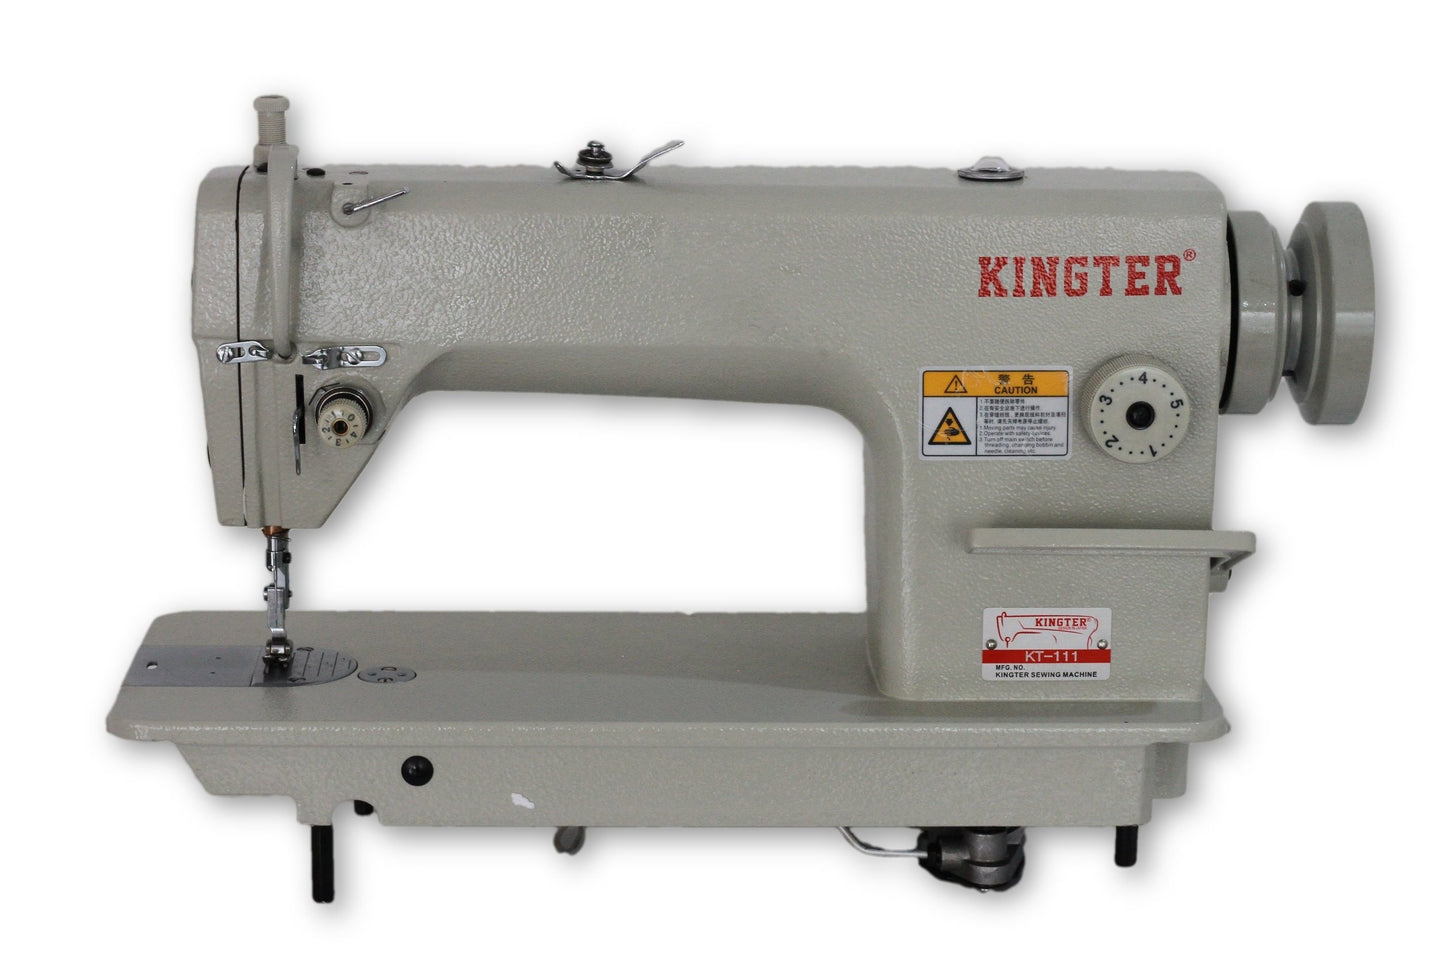 Plana Industrial Kingter KT 111 Maquina De Coser - Commercio